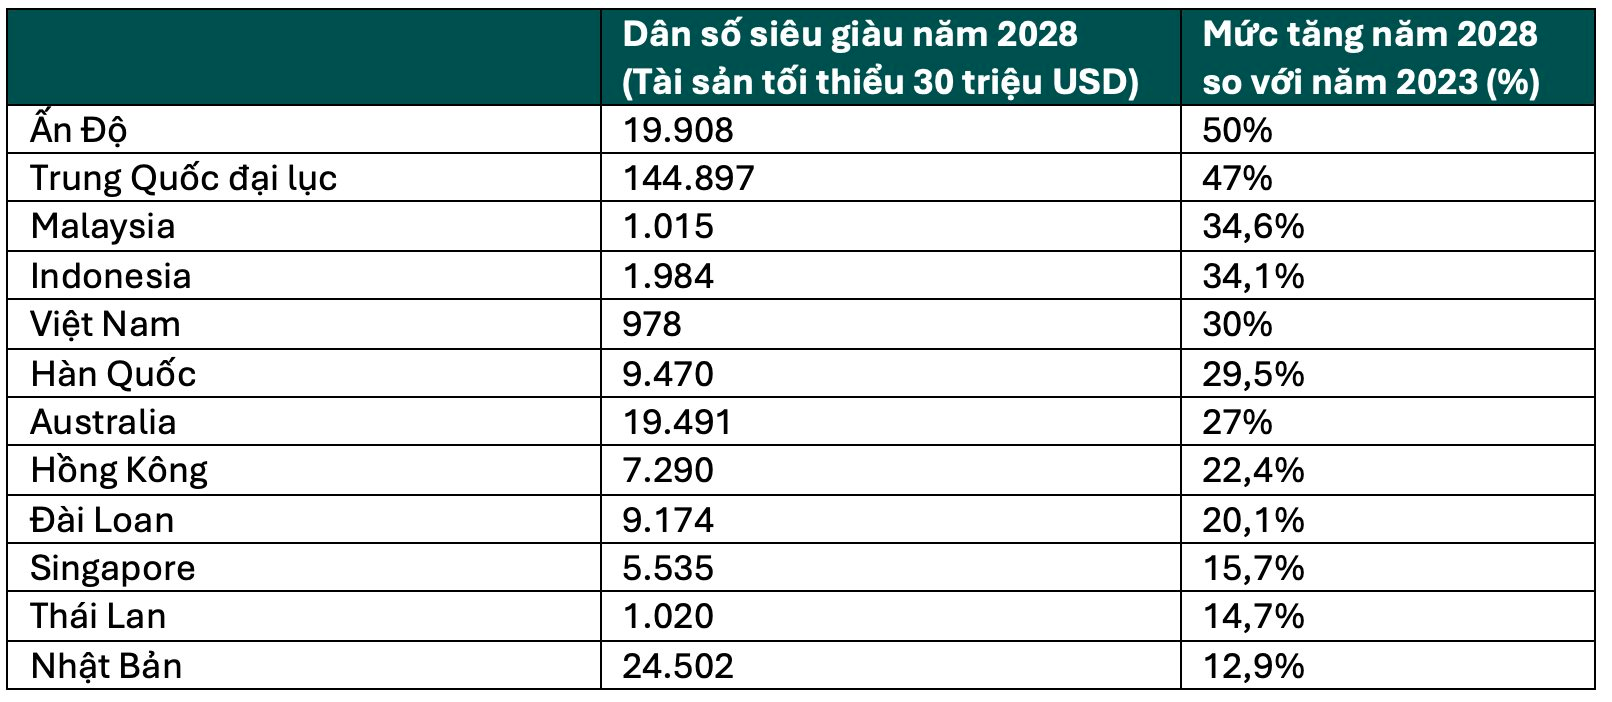 Có 752 người siêu giàu với tốc độ tăng trưởng gấp 3 Thái Lan, Việt Nam thành miền đất hứa 'dụ' loạt thương hiệu xa xỉ Cartier, Longines, Bertazzoni… ồ ạt “đổ bộ” - Ảnh 2.